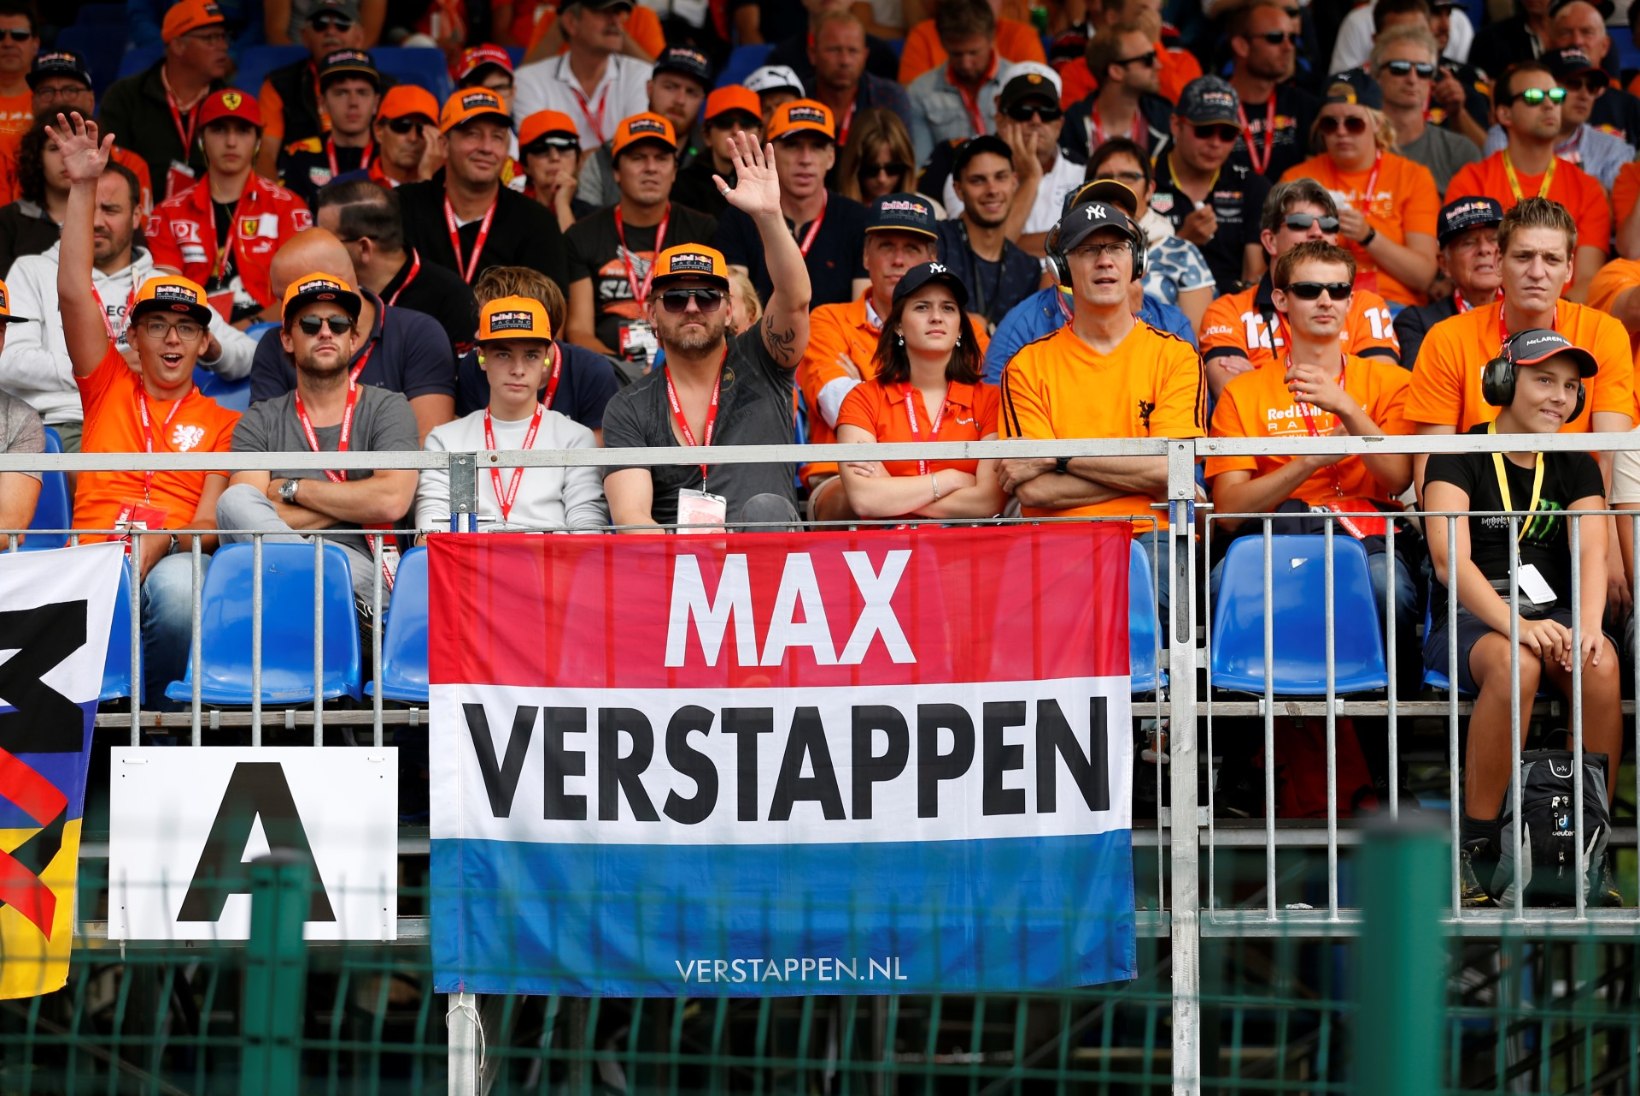 Jälle tehnilise rikke ohvriks langenud Max Verstappen: see pole enam halb õnn, olukord on väga kehv